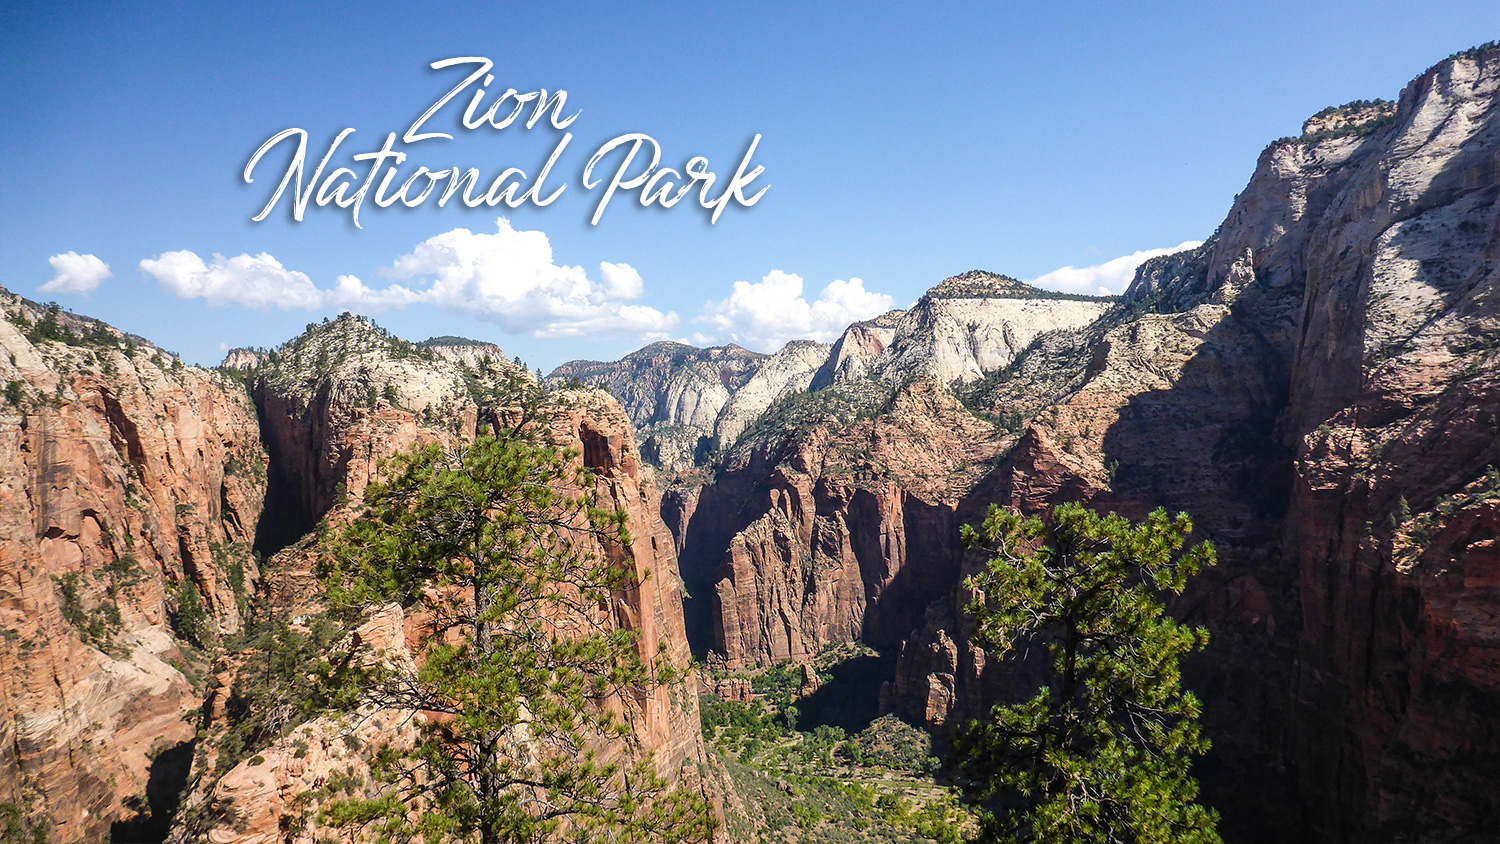 Découvrir Zion National Park pour faire la randonnée de l'Angles Landing Trail lors d'un road trip aux USA.